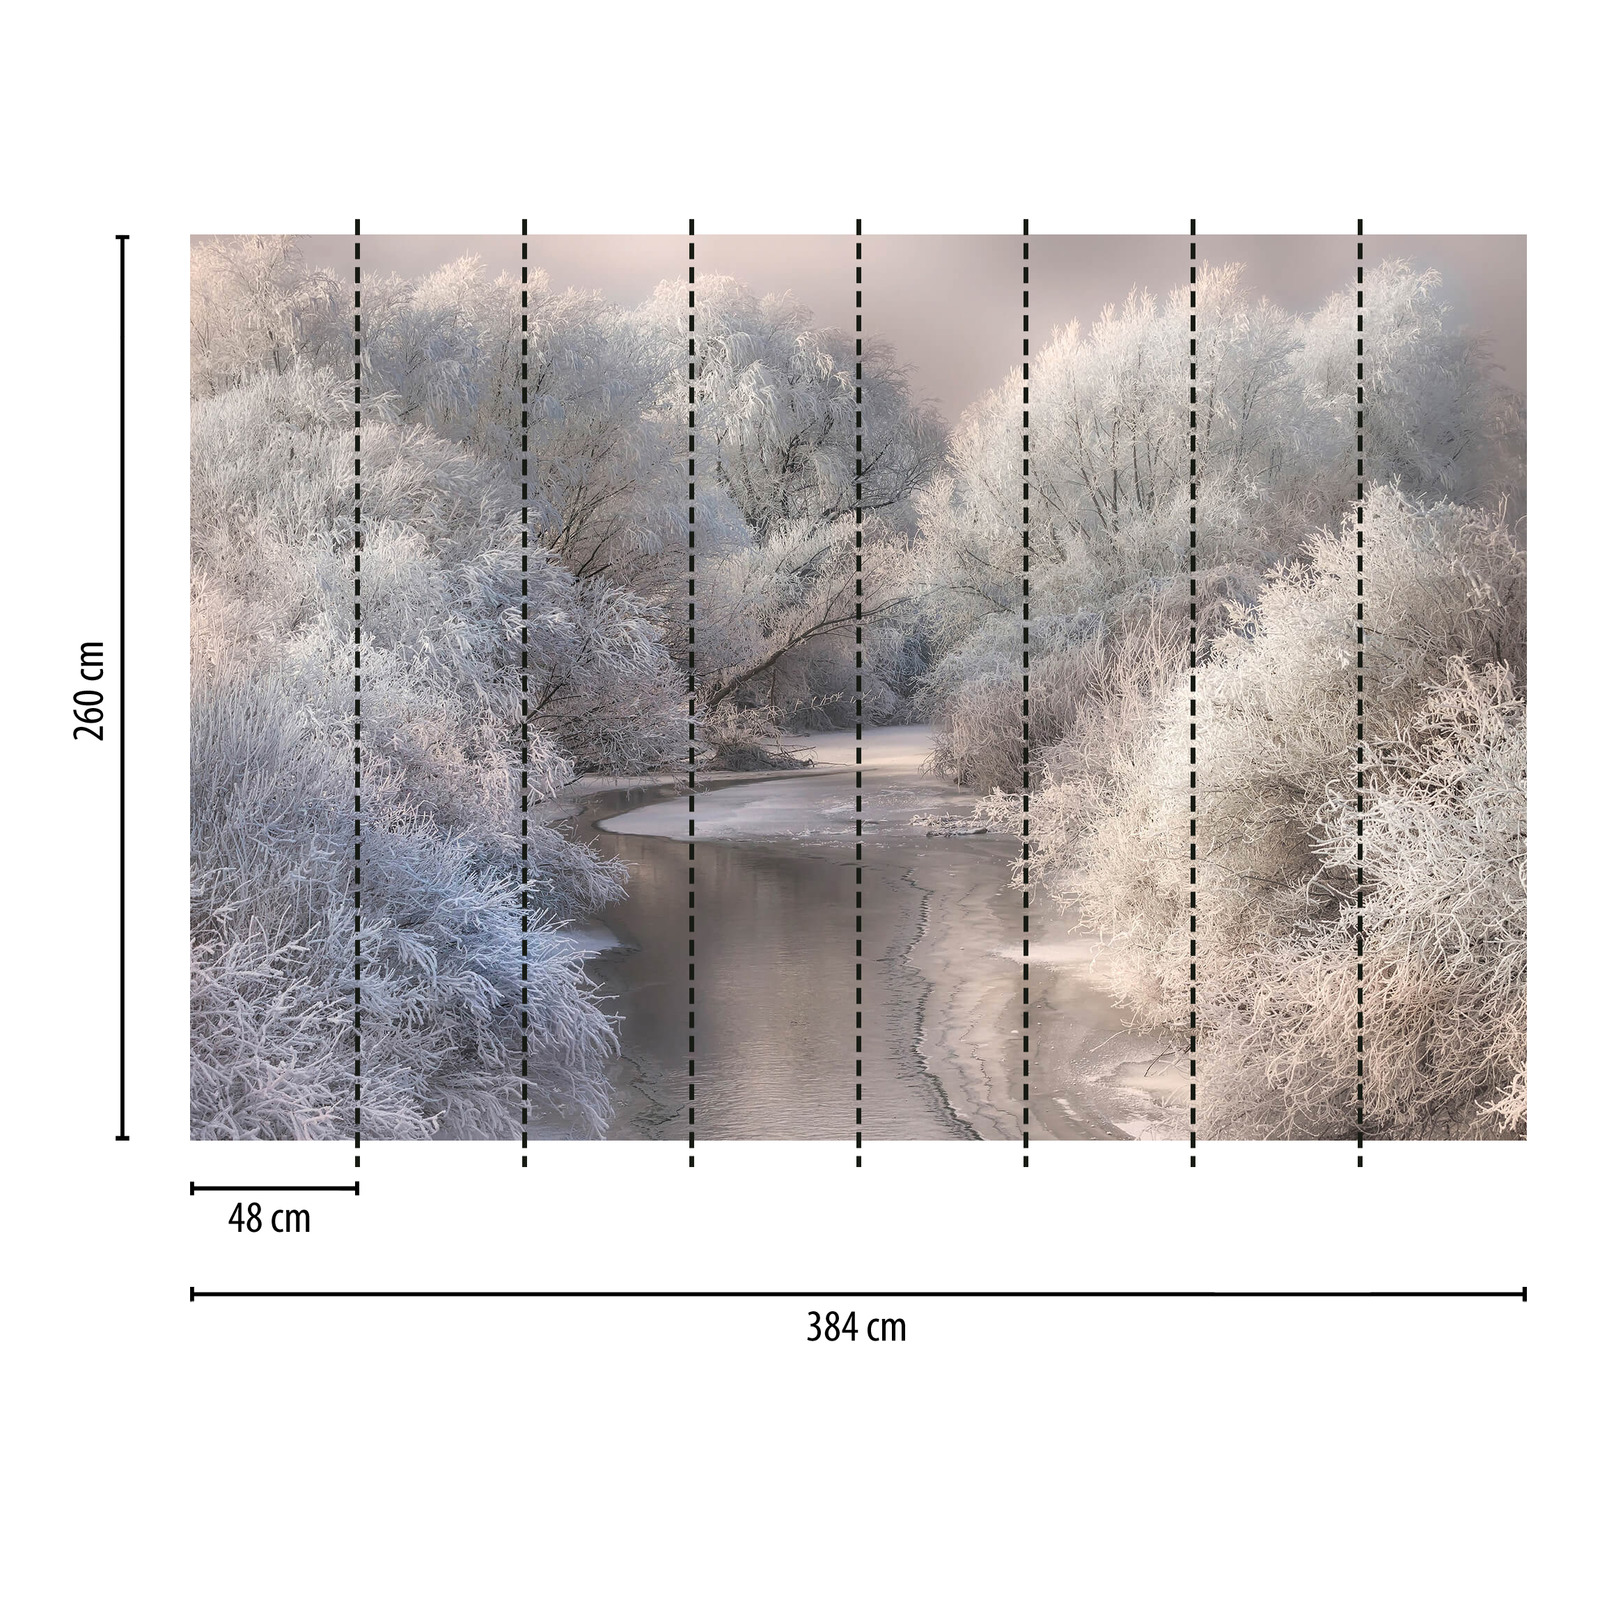             Fototapete gefrorener Wald mit Fluss – Weiß, Grau
        